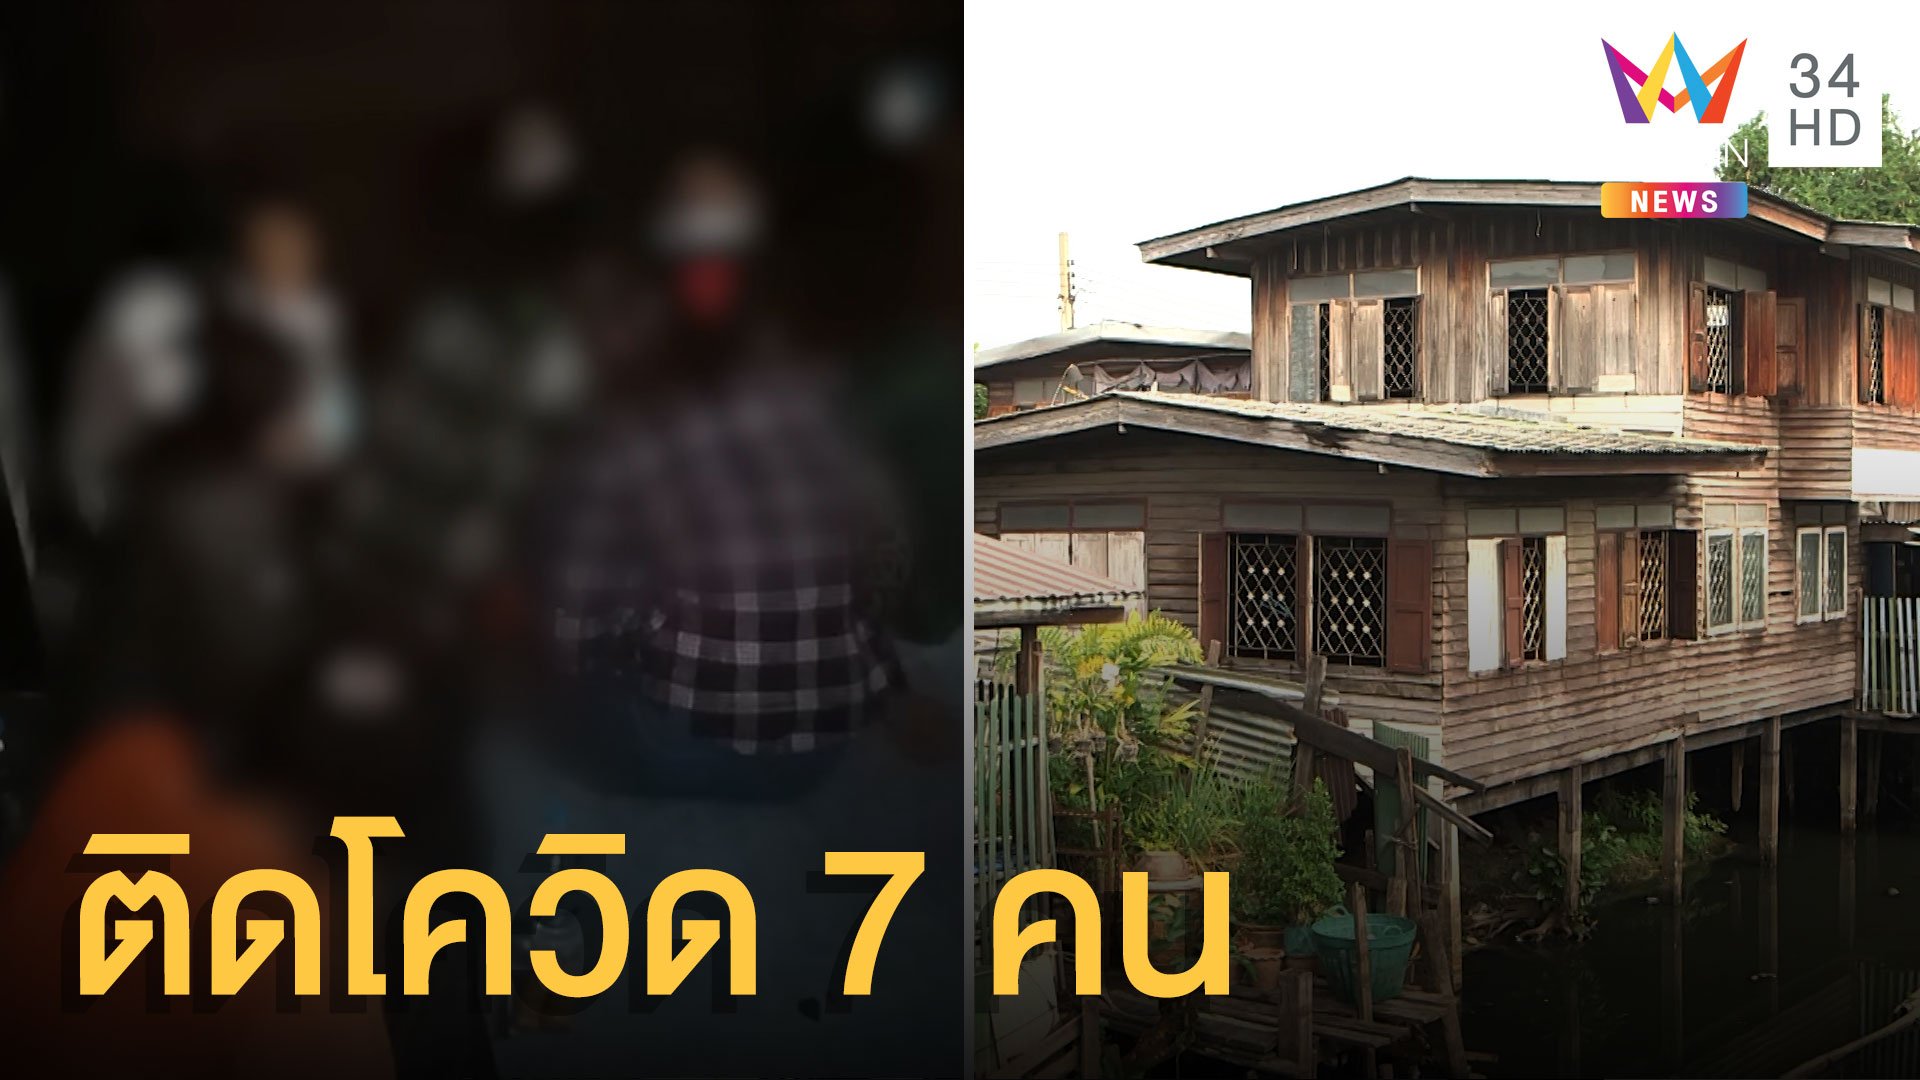 ผวา! ต่างด้าวซุกบ้านเช่าดอนเมือง ติดโควิดถึง 7 คน | ข่าวเที่ยงอมรินทร์ | 6 ม.ค. 64 | AMARIN TVHD34